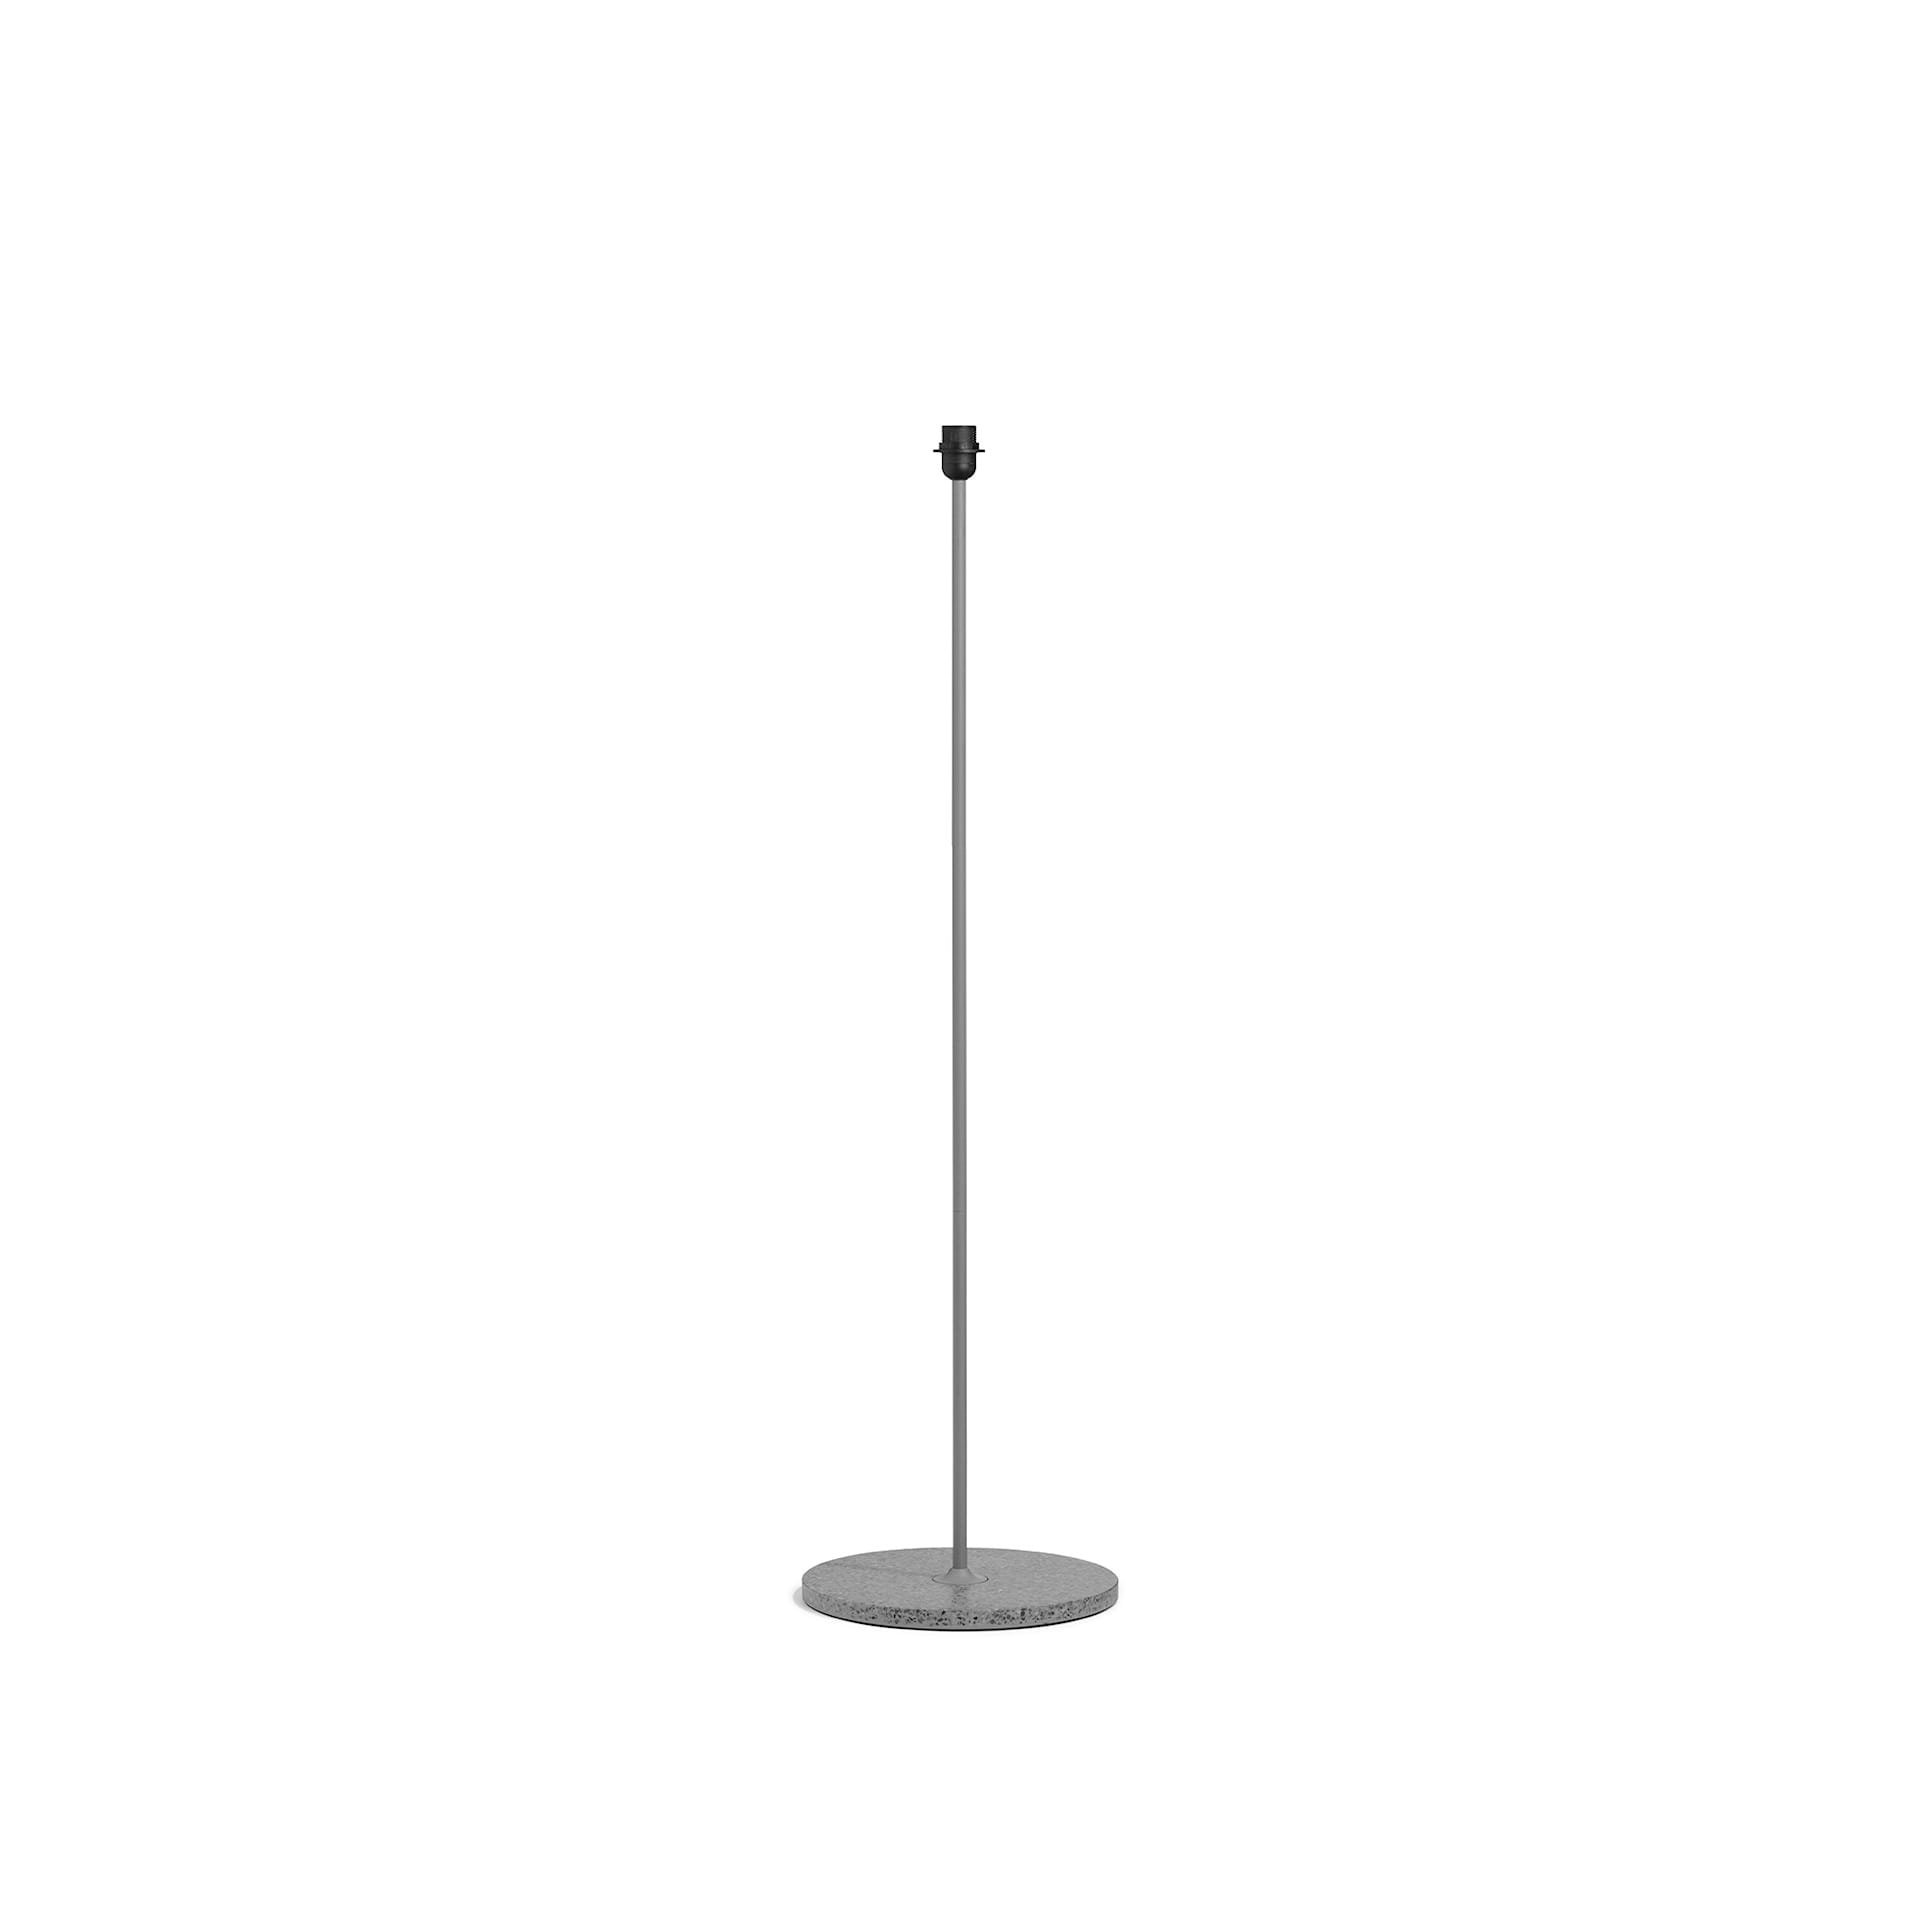 Common Floor Lamp Base - HAY - NO GA